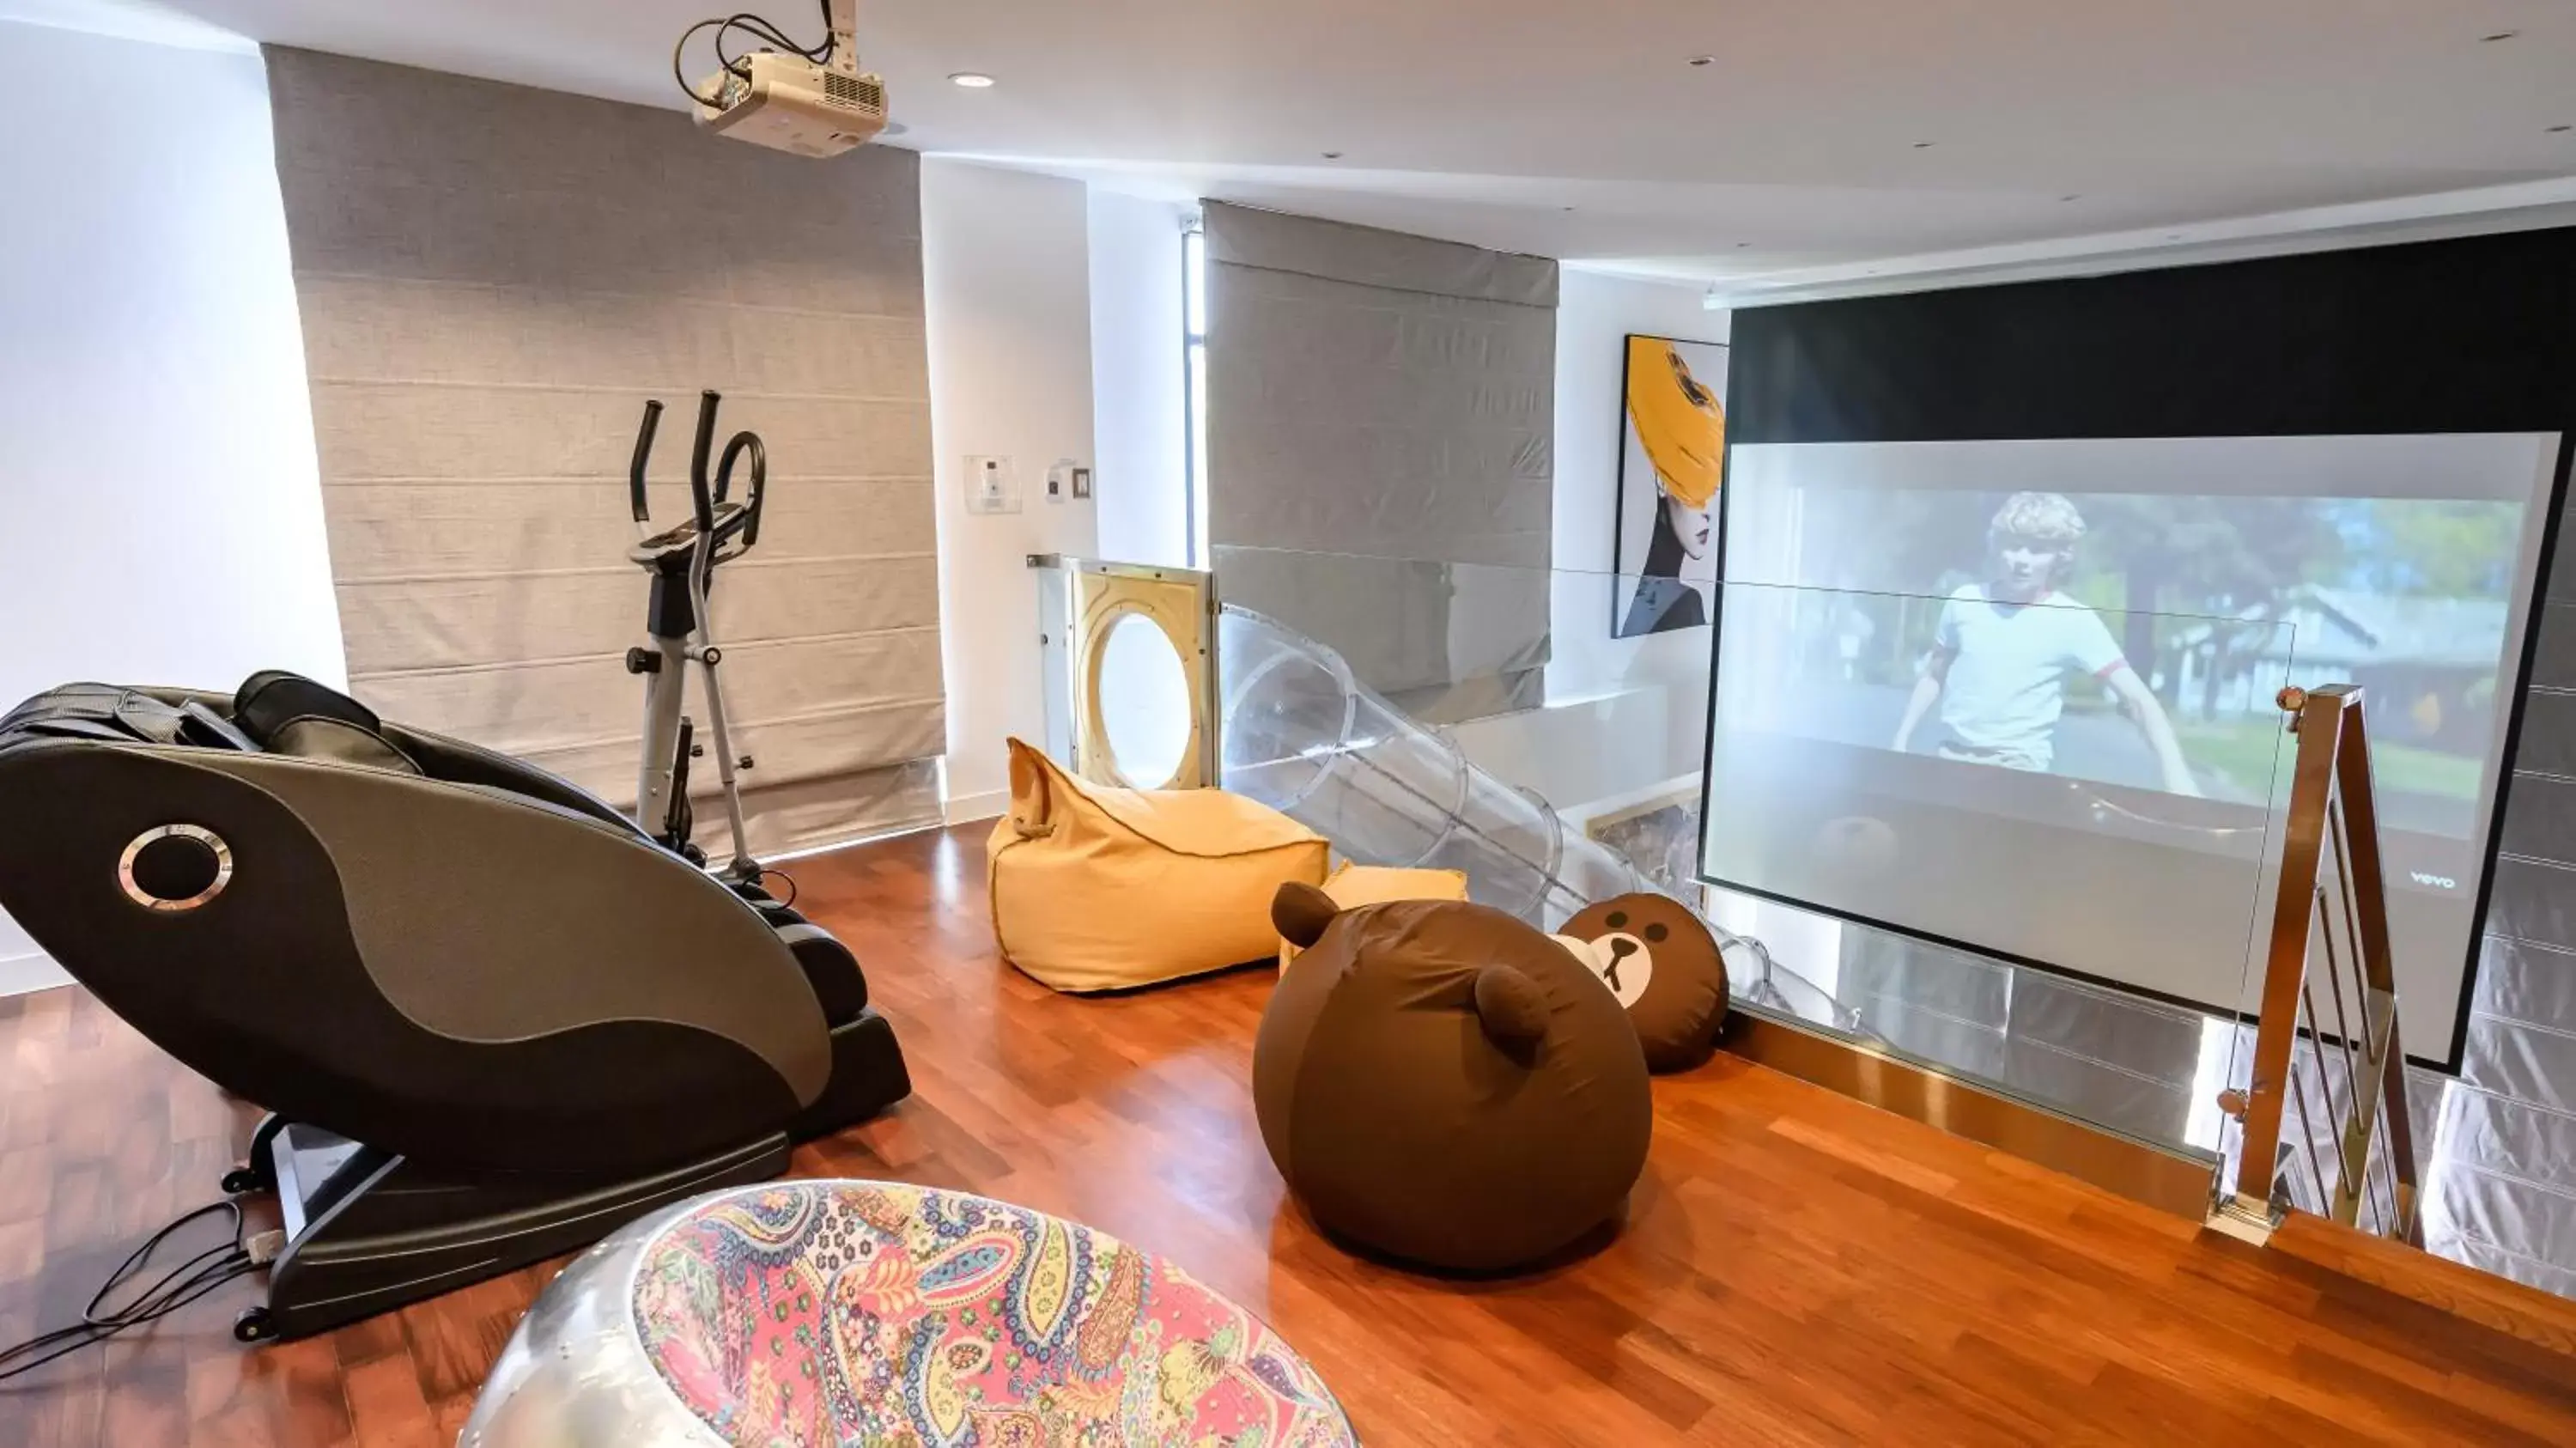 Living room in Benviar Tonson Residence